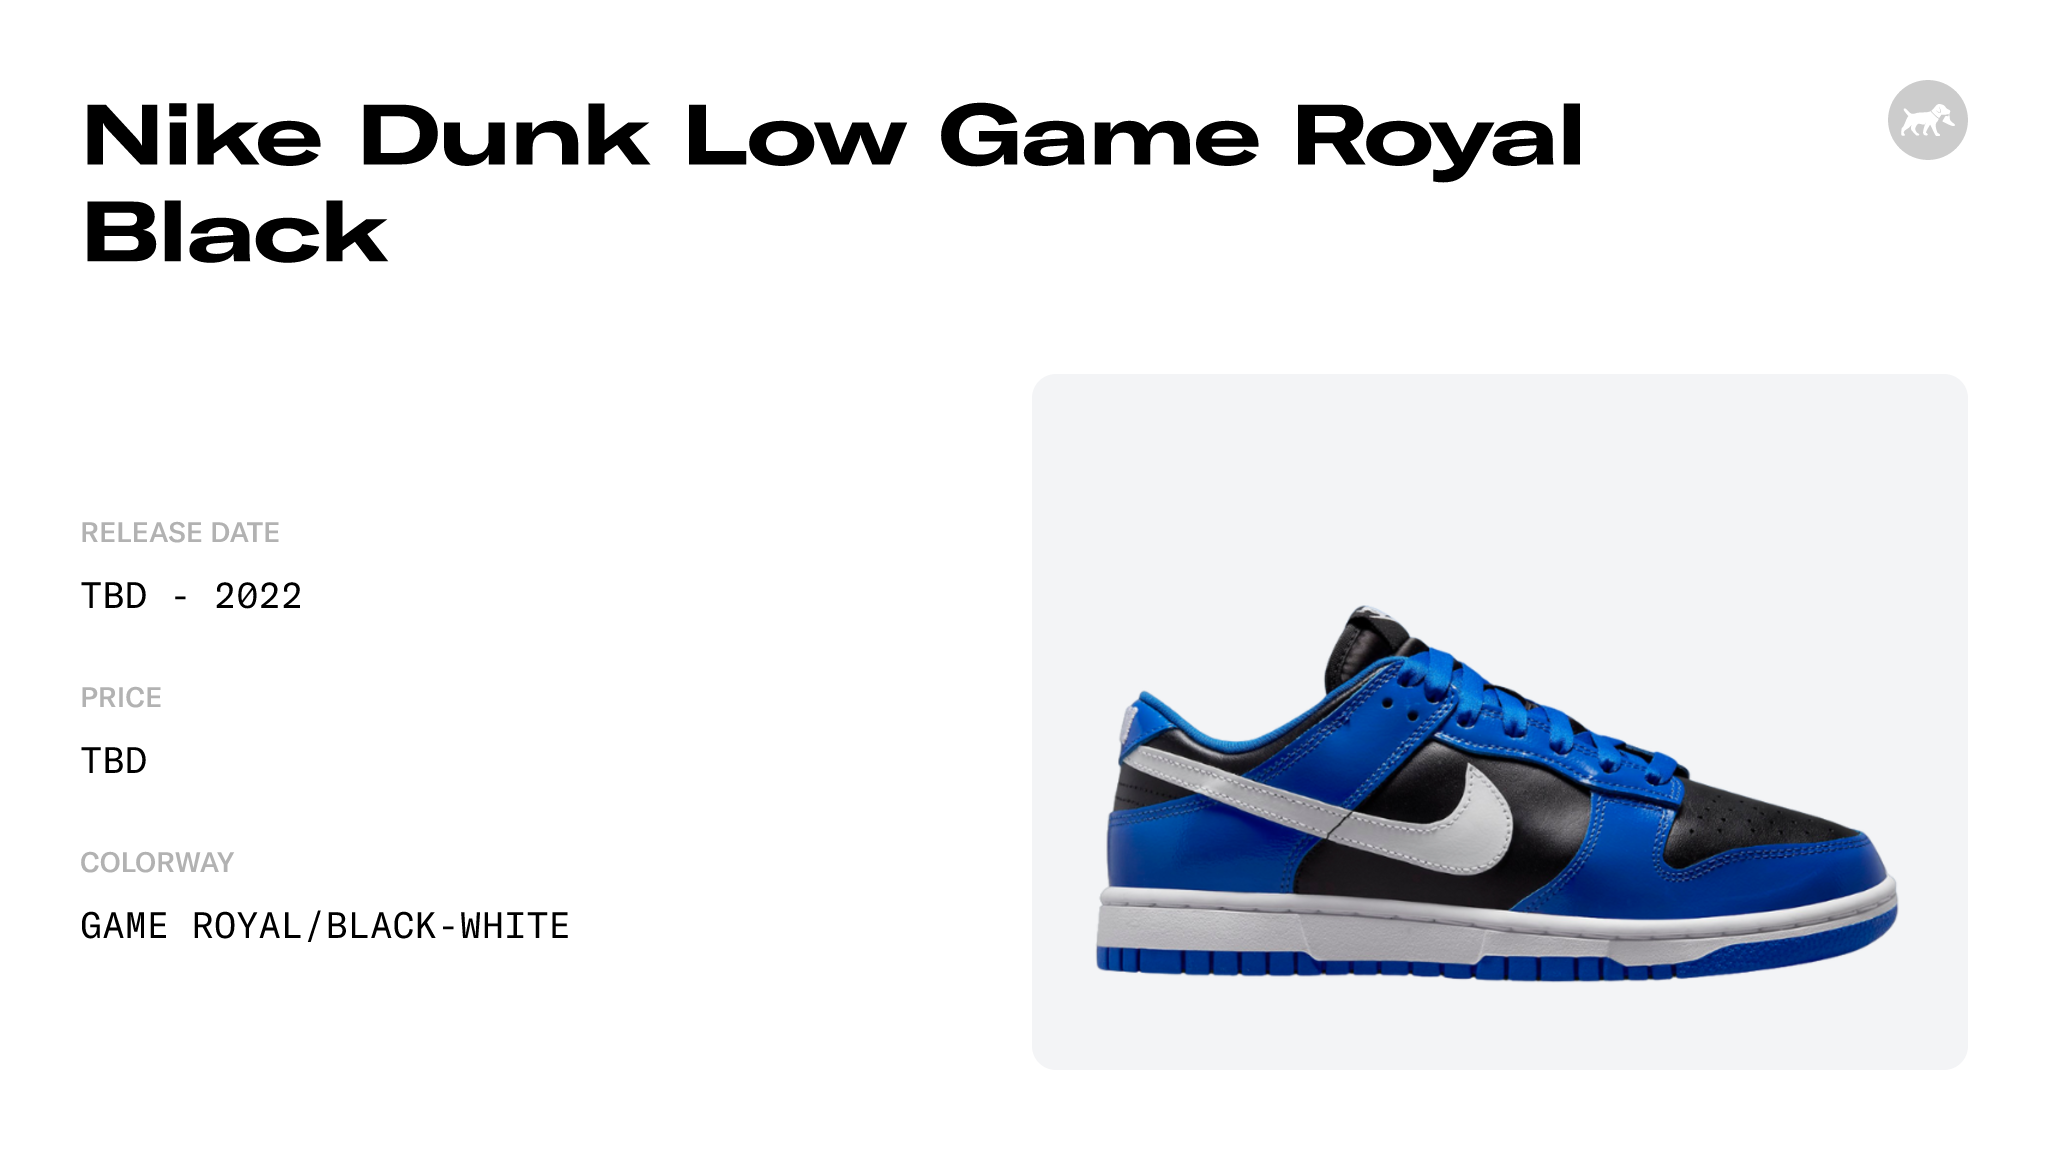 Nike Dunk Low Black Game Royal FB1842-001